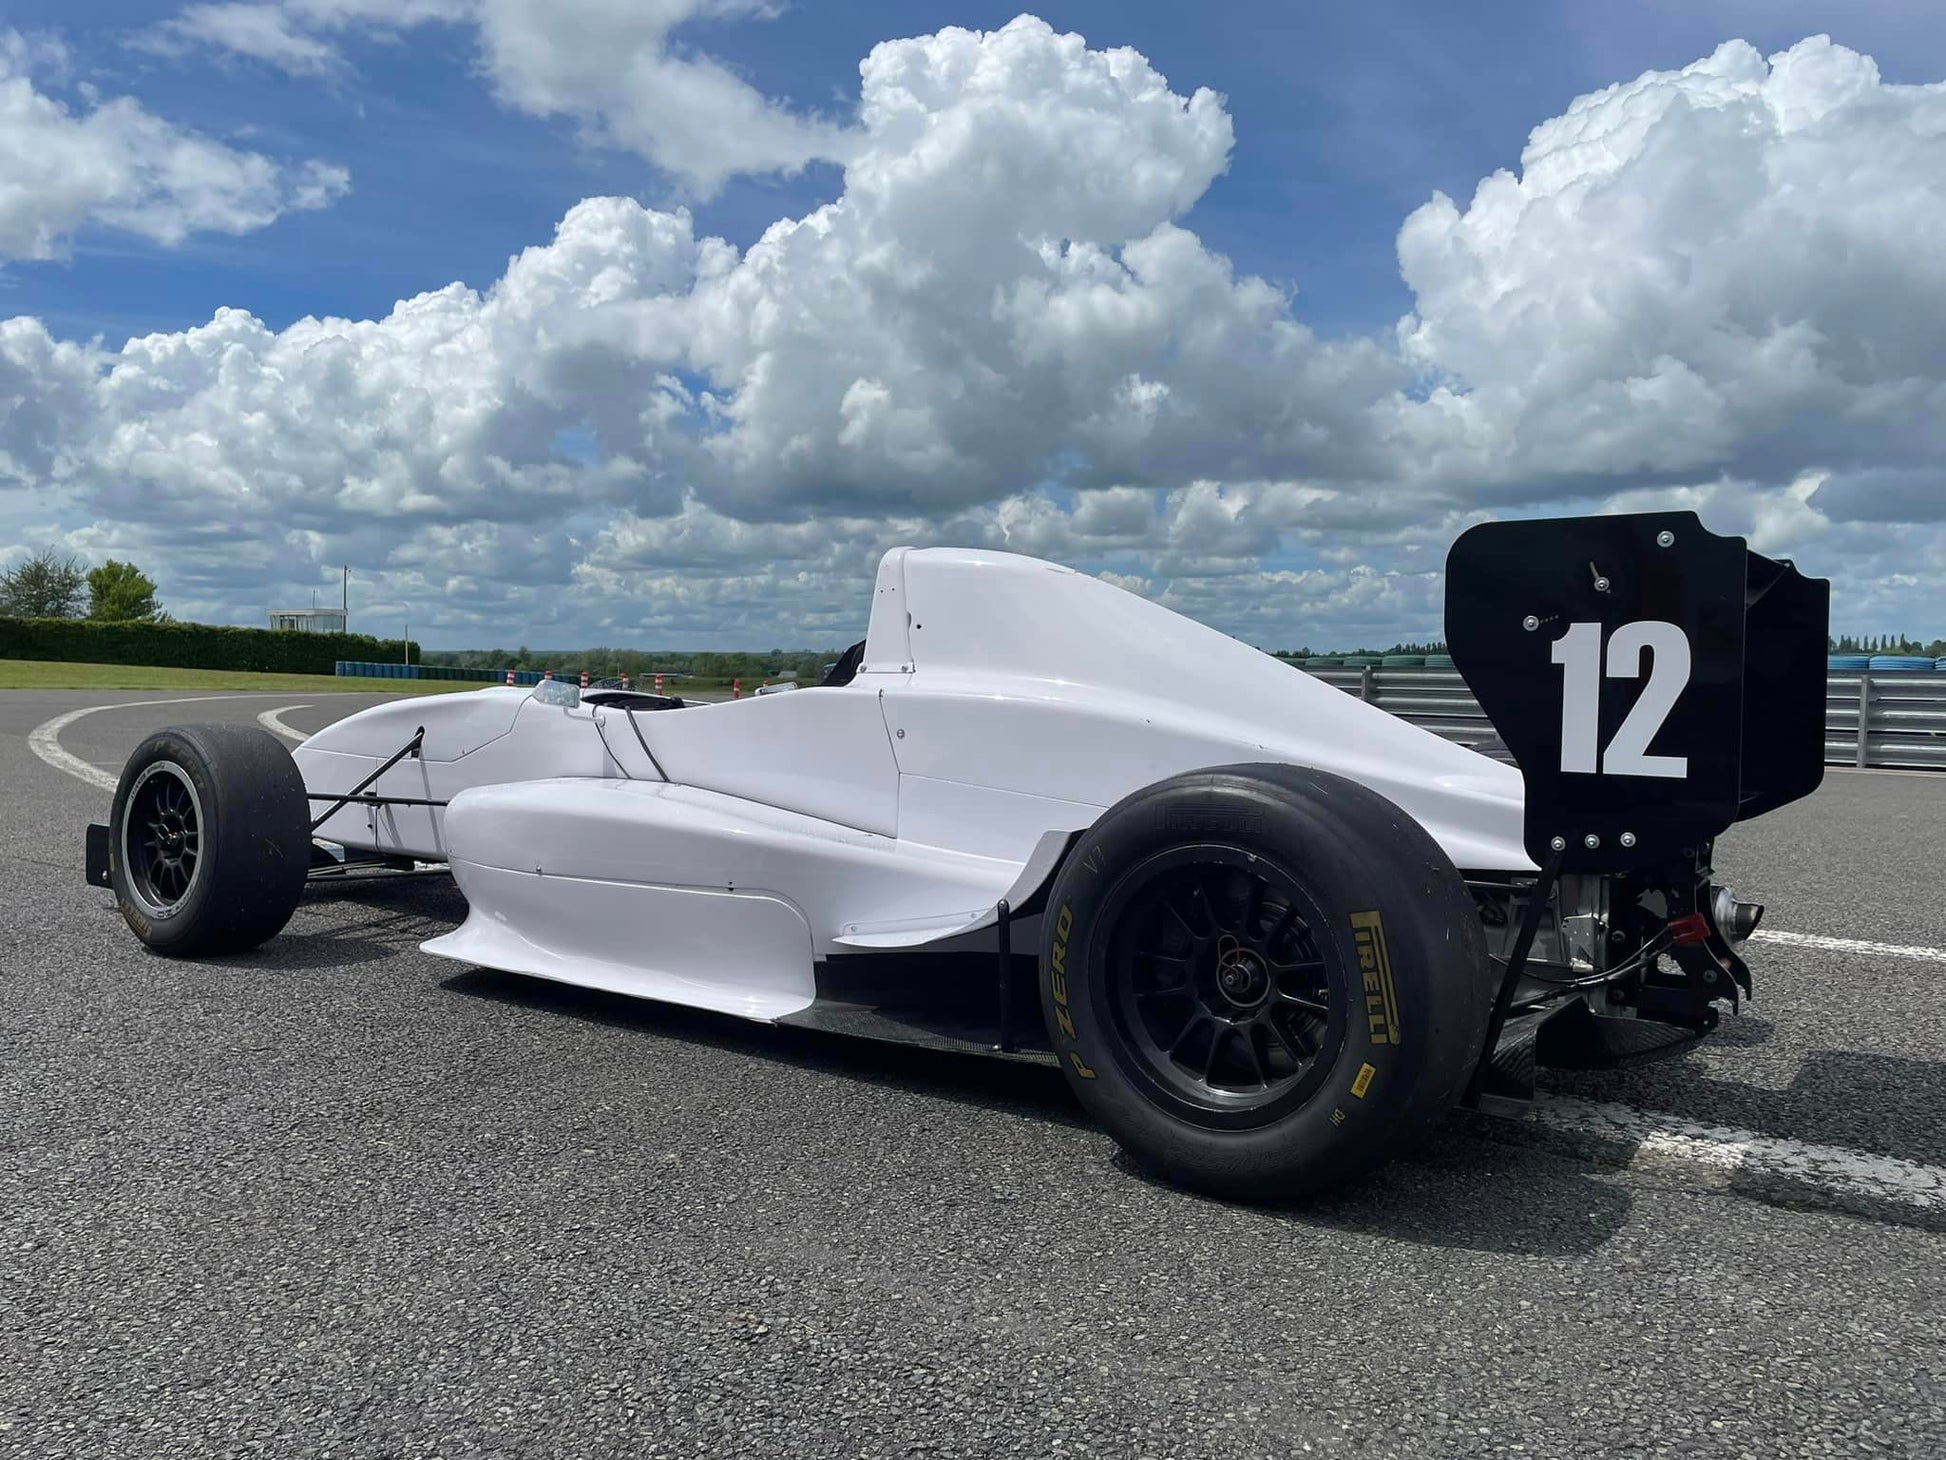 Formule Renault 2.0 à découvrir sur circuit en Ecole de pilotage sur monoplaces